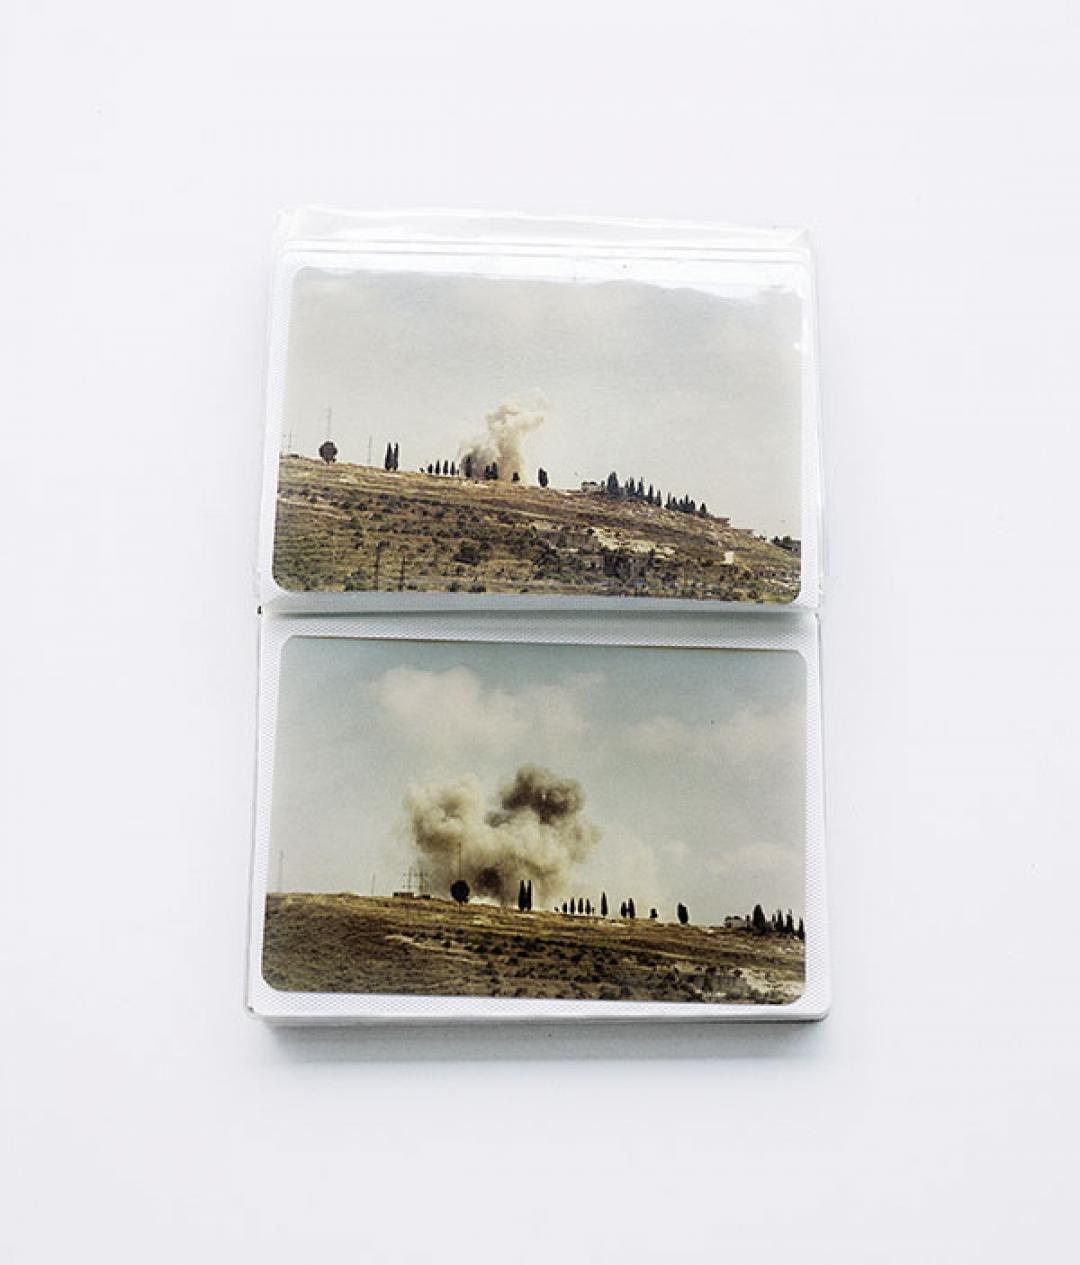 Akram Zaatari, Minialbum, 2007